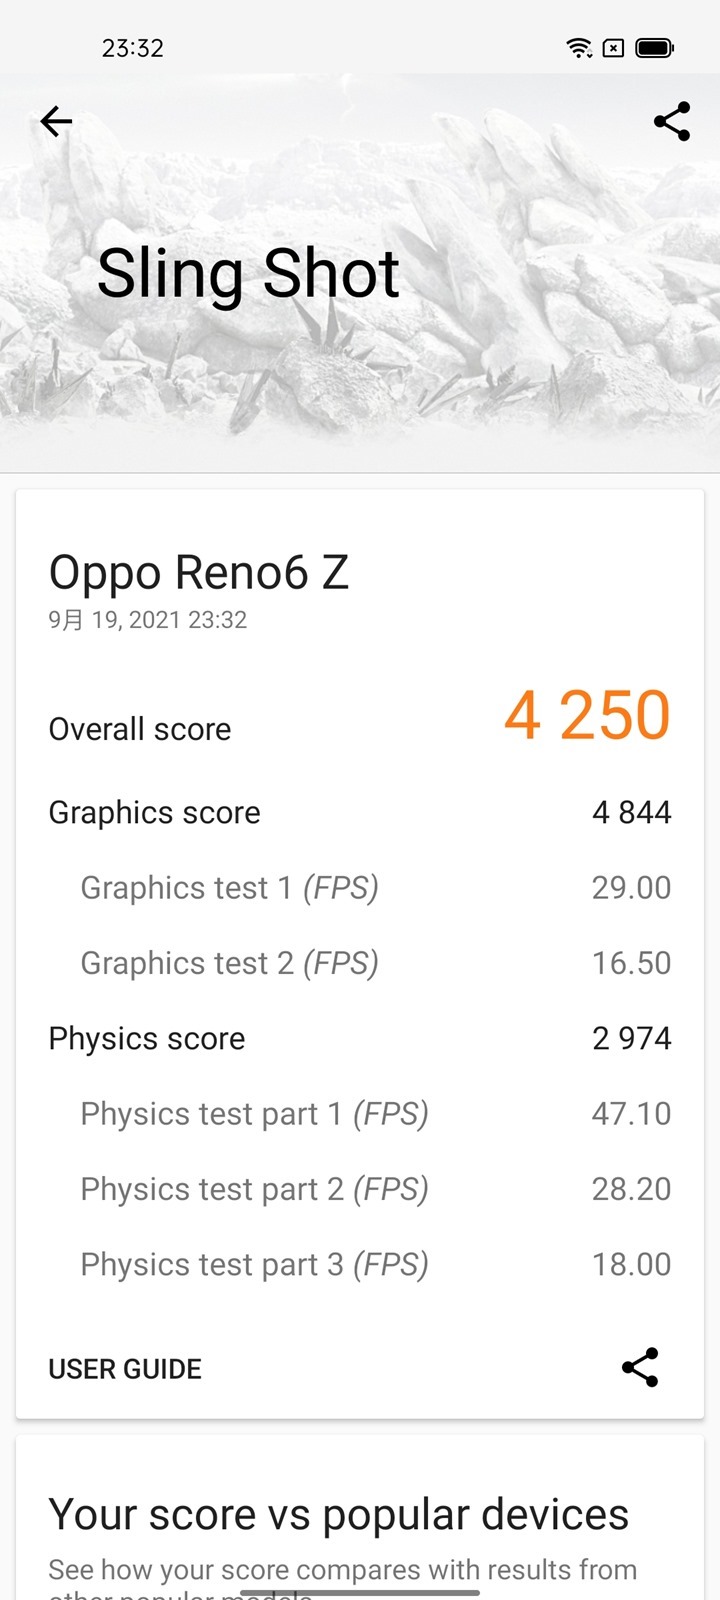 輕鬆入手輕薄 OPPO Reno 6Z 開箱電力性能實測 + 相機實拍分享 @3C 達人廖阿輝